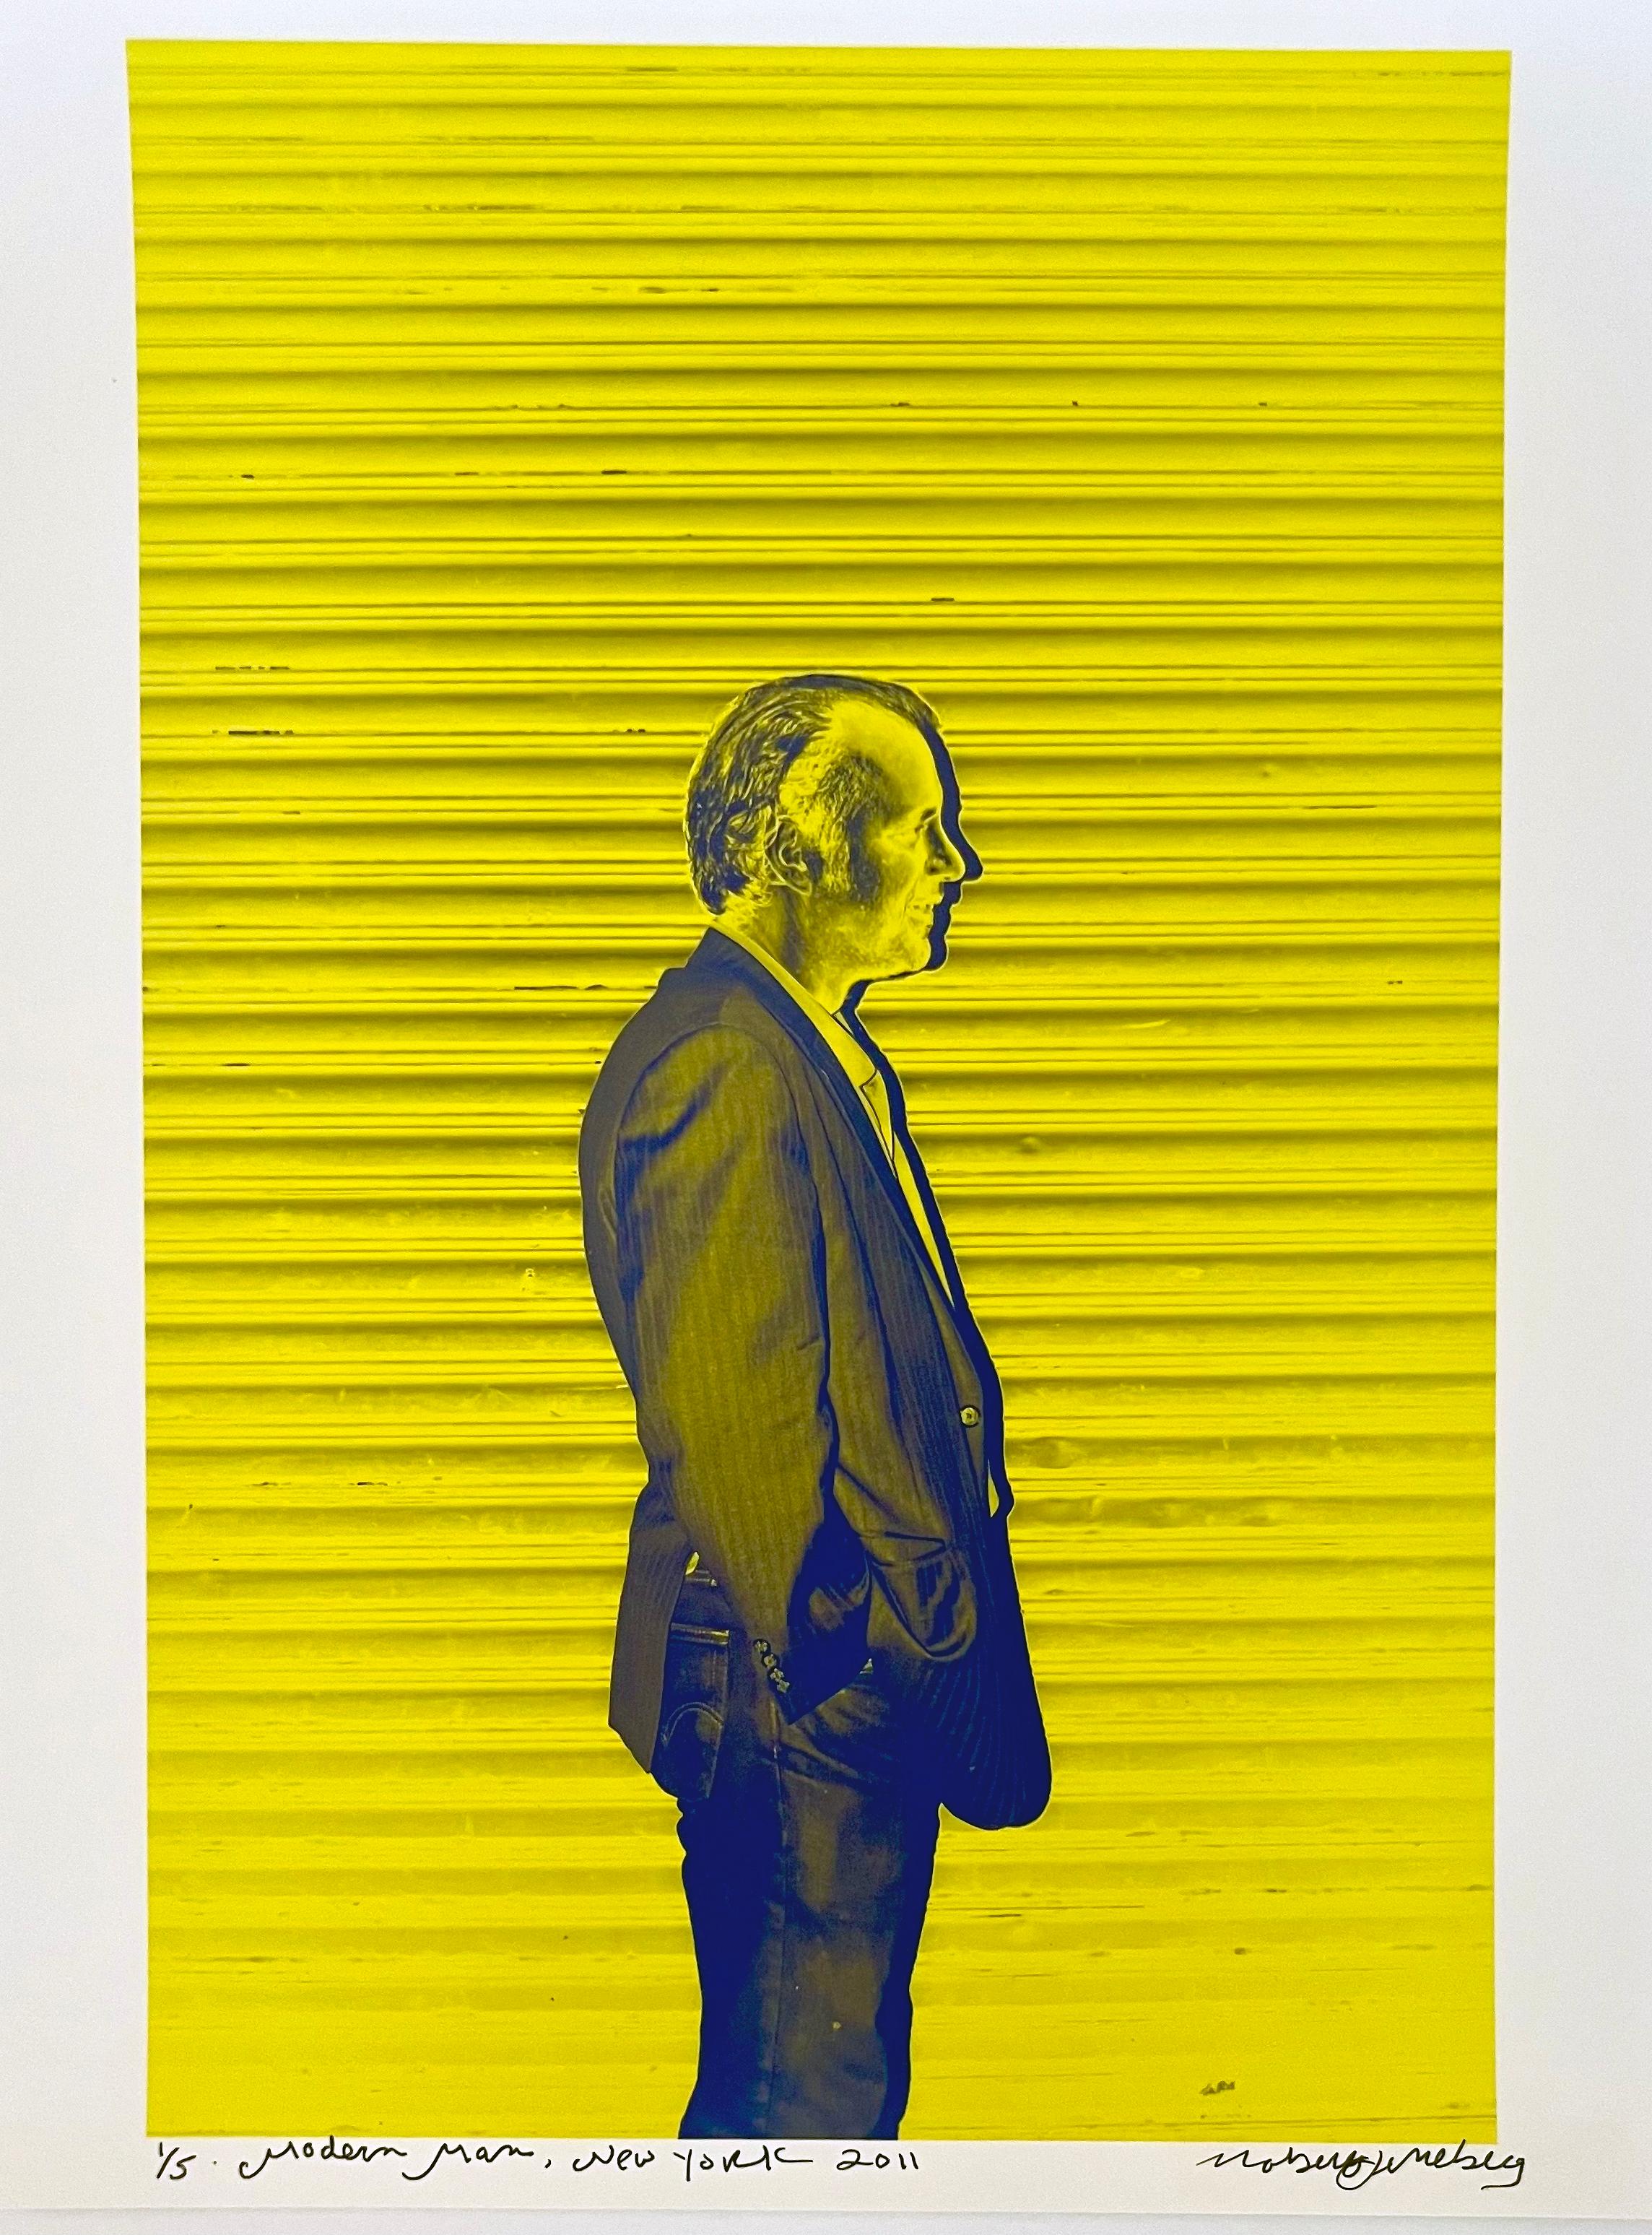 Das neongelbe Pop-Art-Fotoporträt "Modern Man" von Roberta Fineberg wurde in den Straßen von East Harlem, New York, aufgenommen. 

Modern Man, 2011 von Roberta Fineberg ist ein 14" x 11" großer C-Print. Der Fotograf datierte, betitelte und signierte